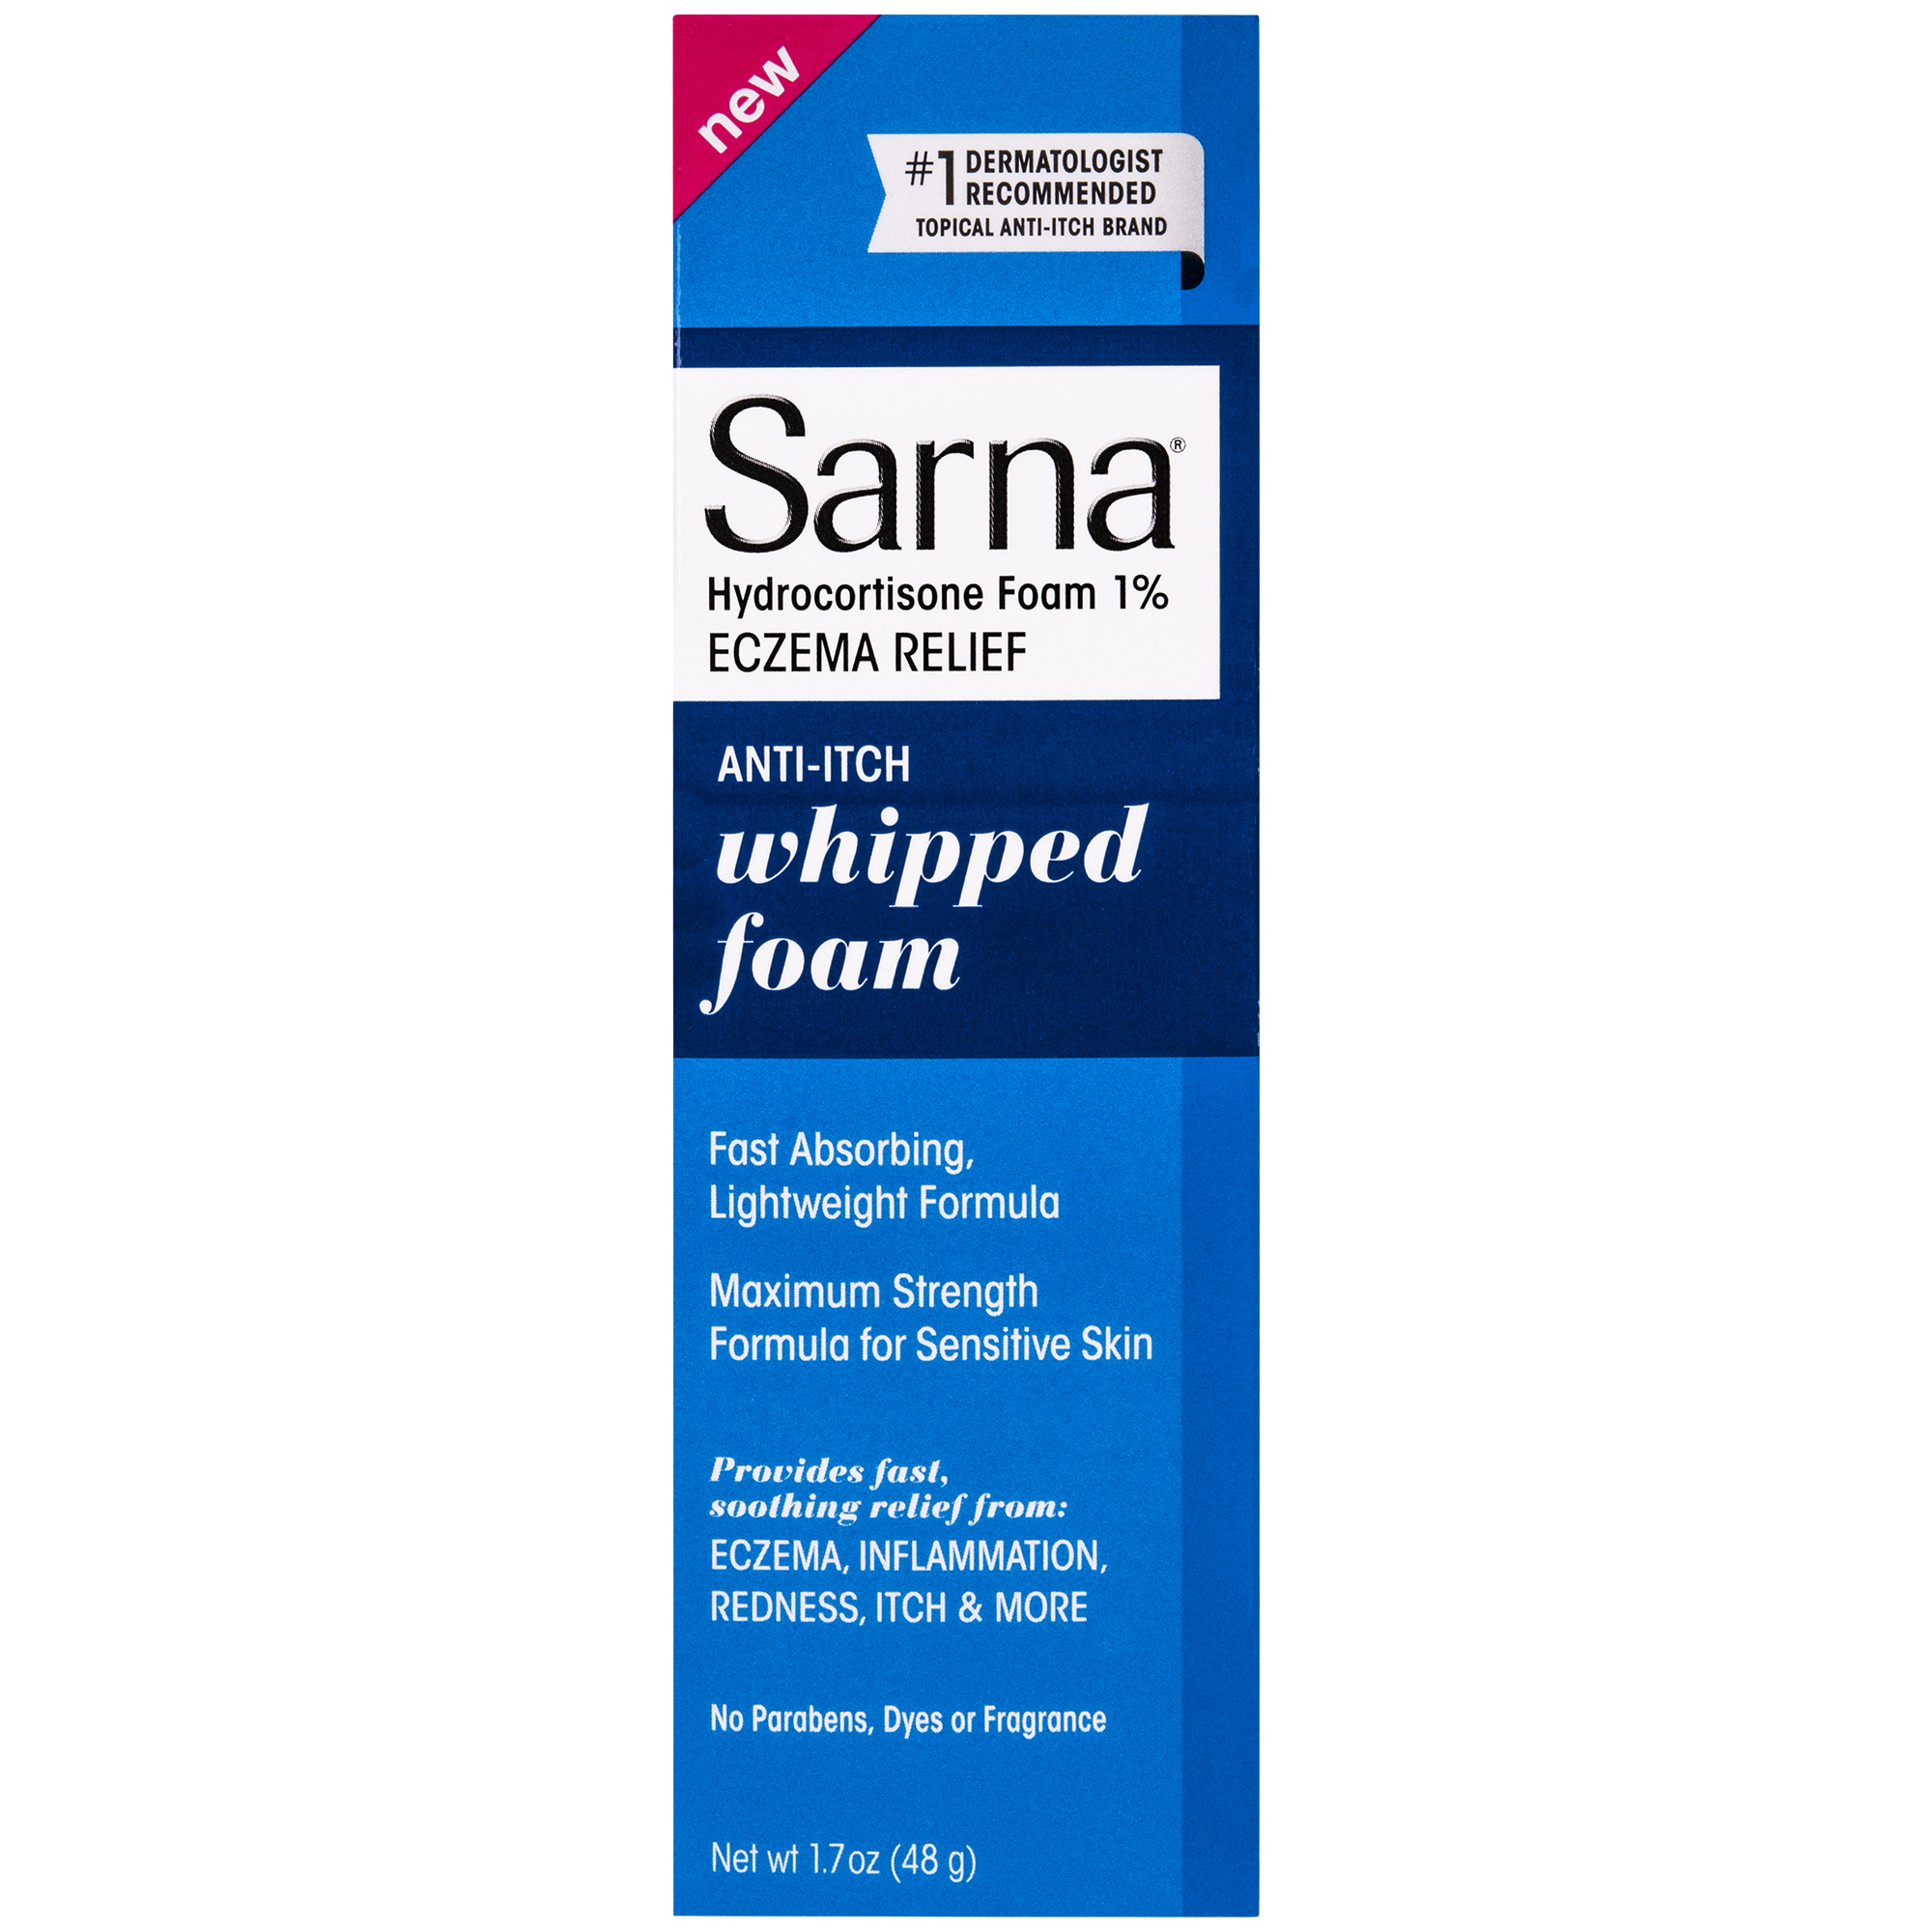 Sarna Eczema Relief Anti-Itch Hydrocortisone, Whipped Foam, 1.7 oz - image 1 of 2